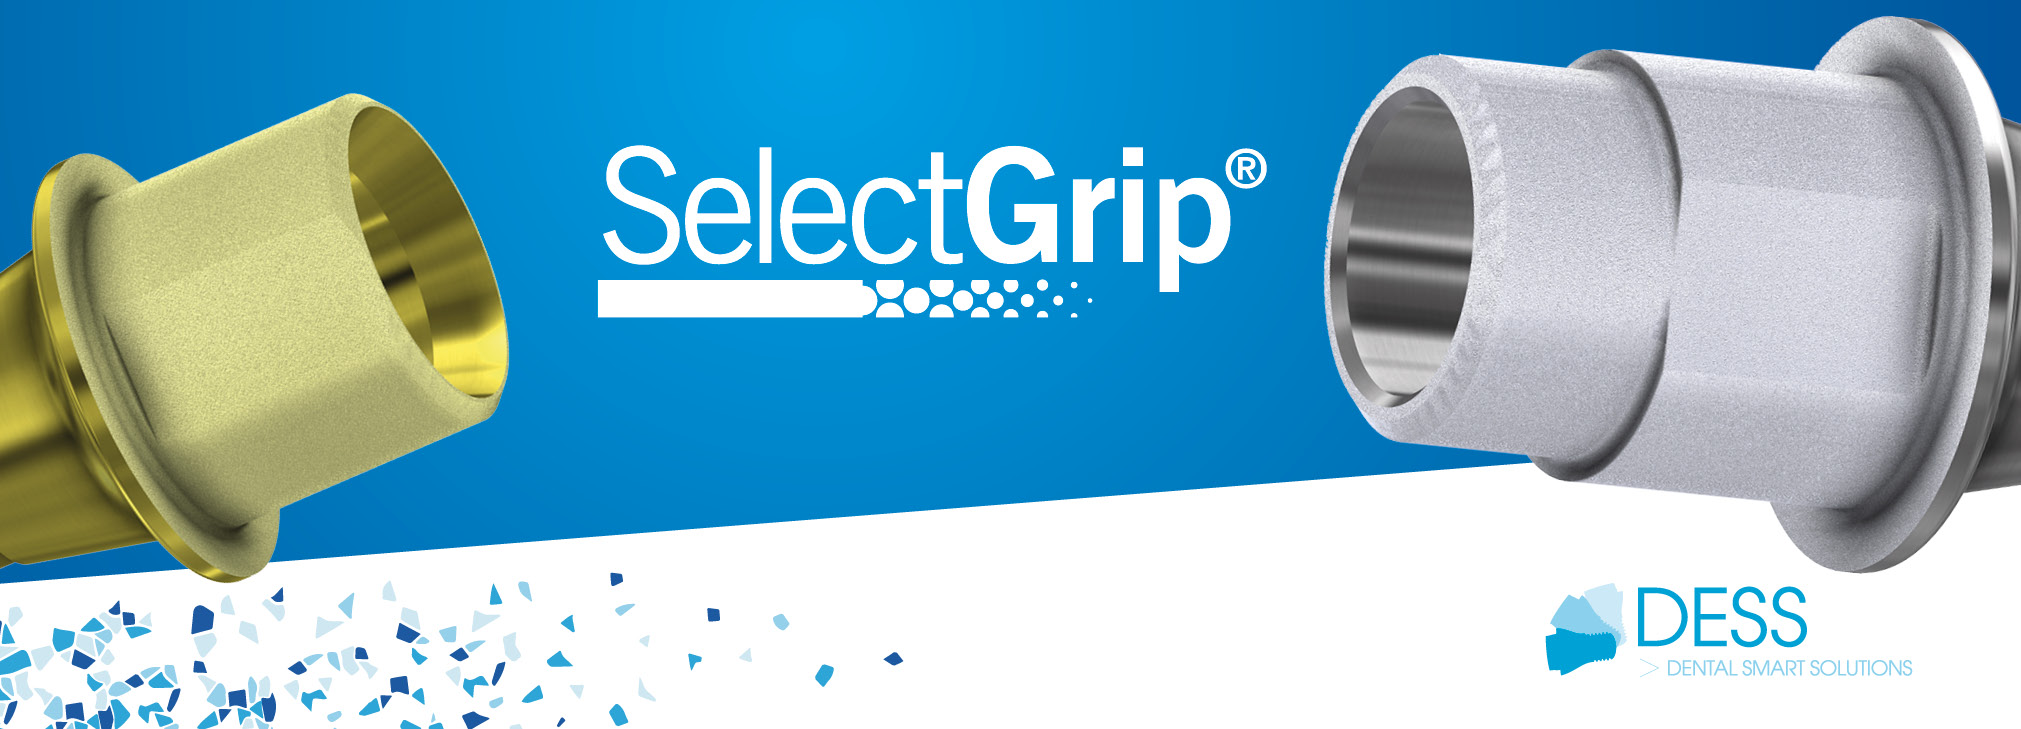 SelectGrip®, die Oberflächenbehandlung, die das DESS-Prothesengeschiebe auszeichnet